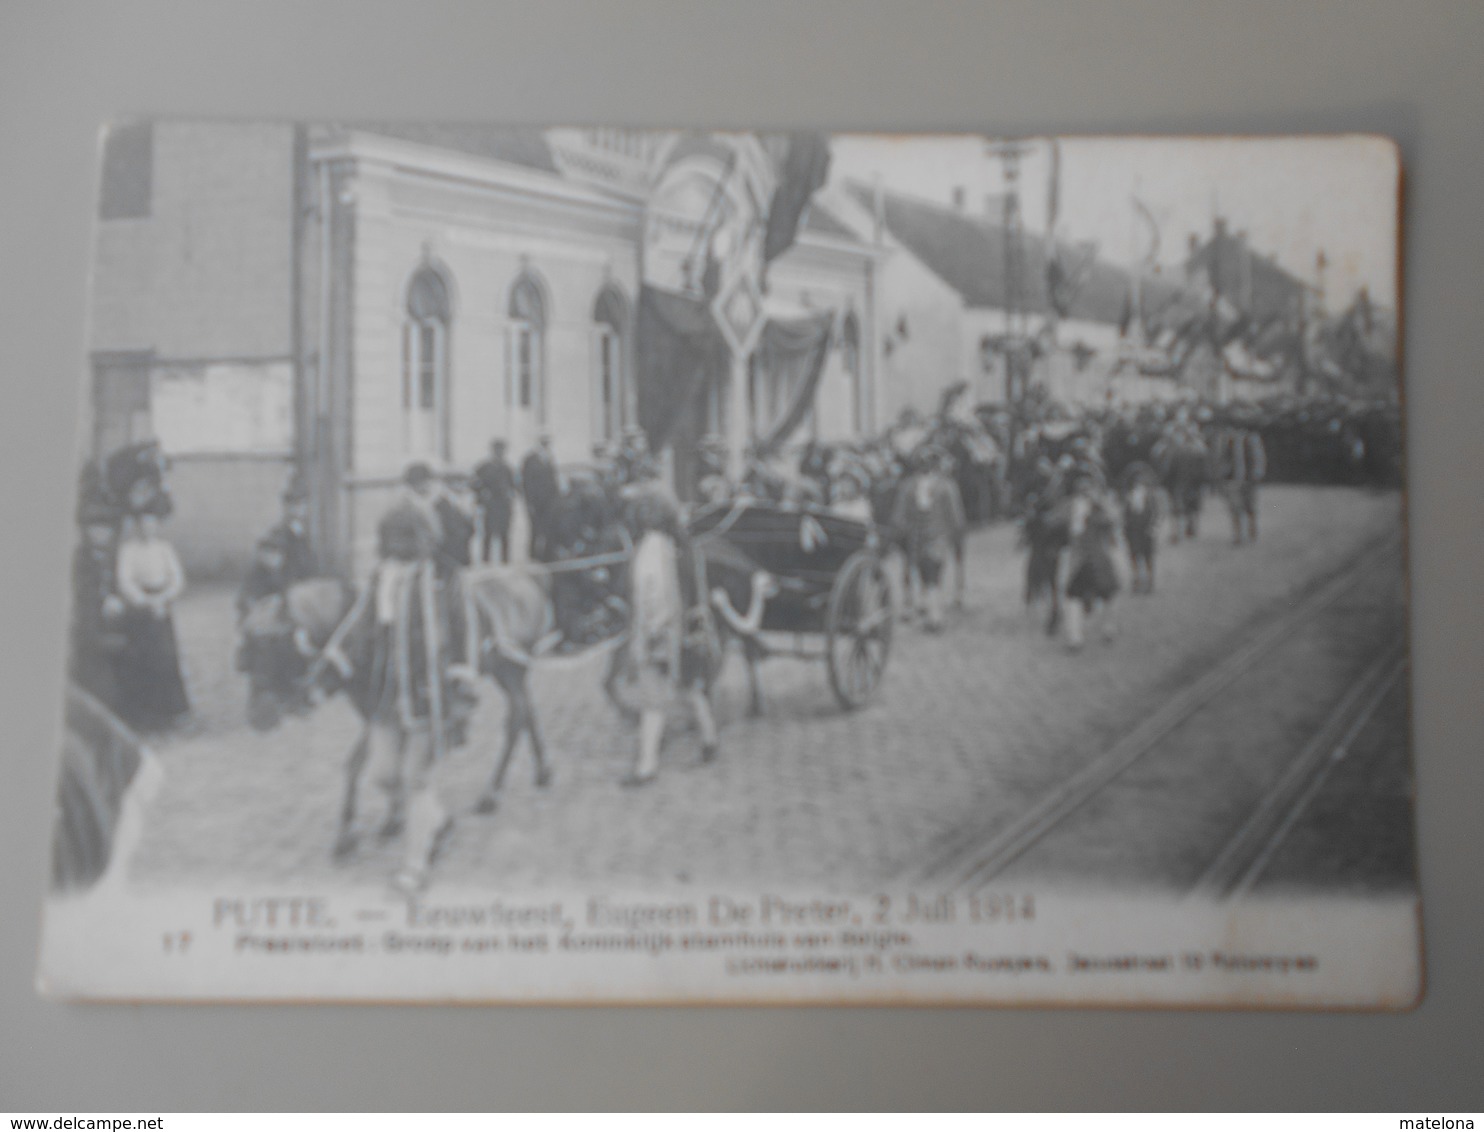 BELGIQUE ANVERS PUTTE FEUWFEEST,EUGEEN DE PRETER, 2 JULI 1914 PRAALSTOET GROEP VAN HET KONINKLIJK STAMHUIS VAN BELGIE - Putte